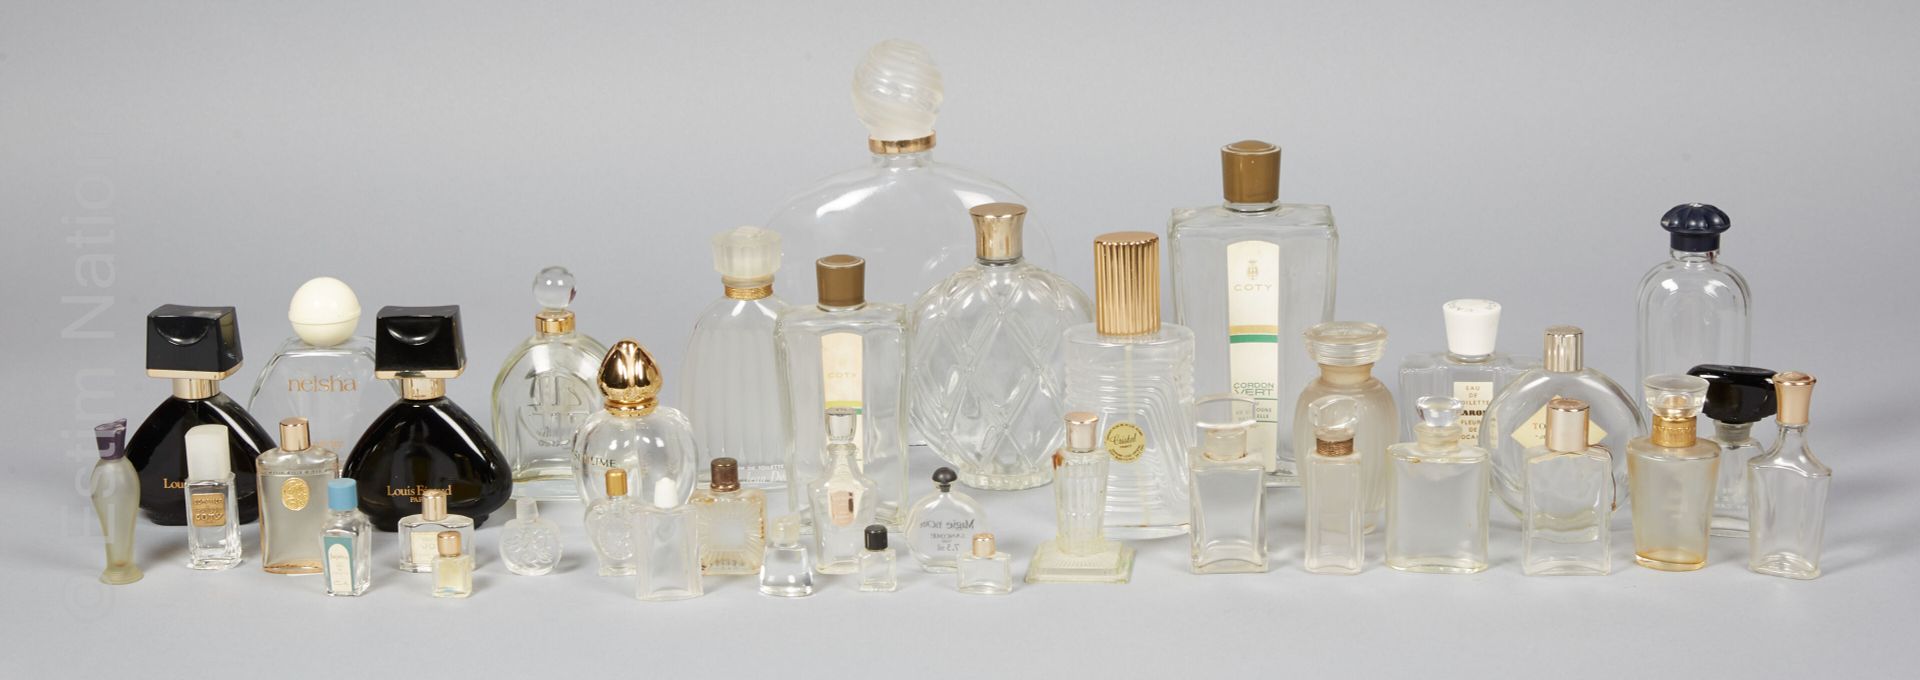 FLACONS DE PARFUM Wiedervereinigung von leeren Parfümflaschen einschließlich :

&hellip;